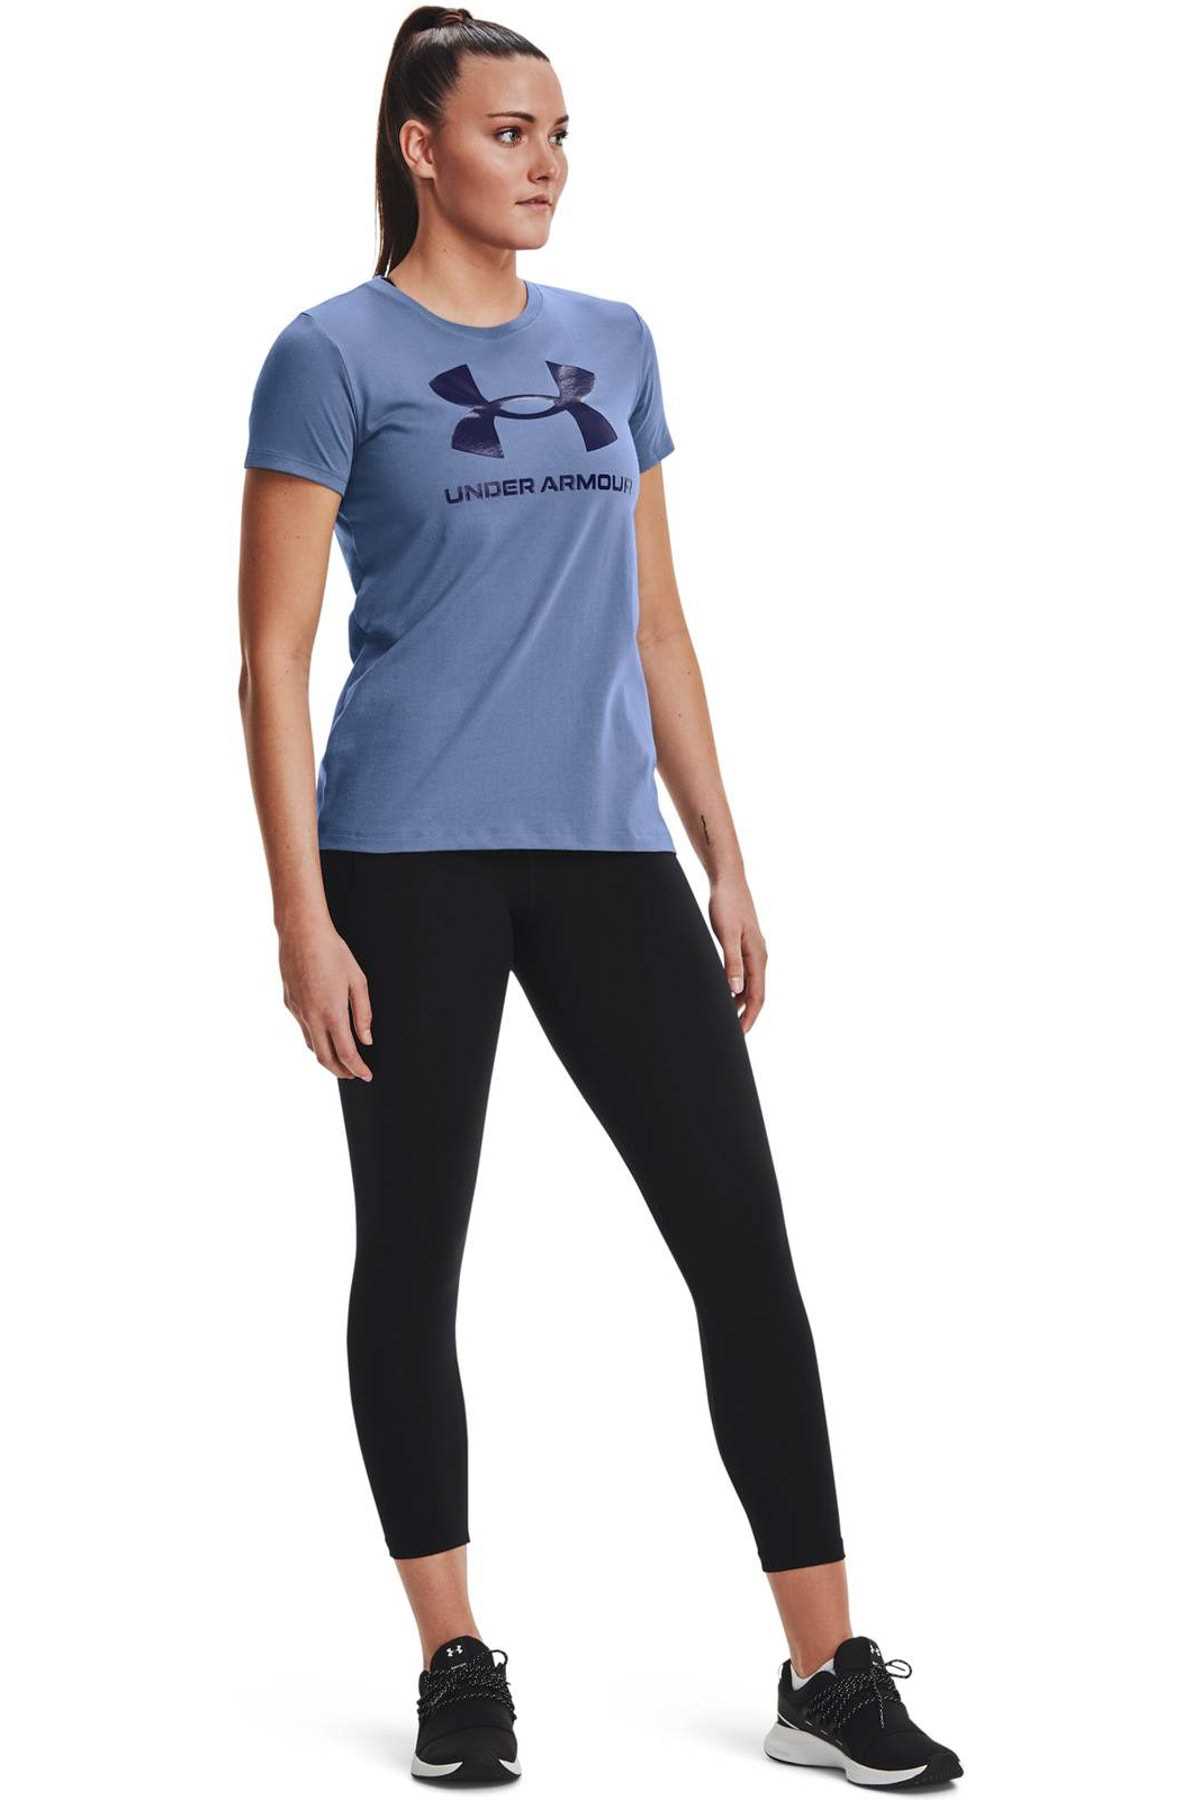 سفارش تیشرت ورزشی زنانه ارزان برند Under Armour رنگ آبی کد ty93999125